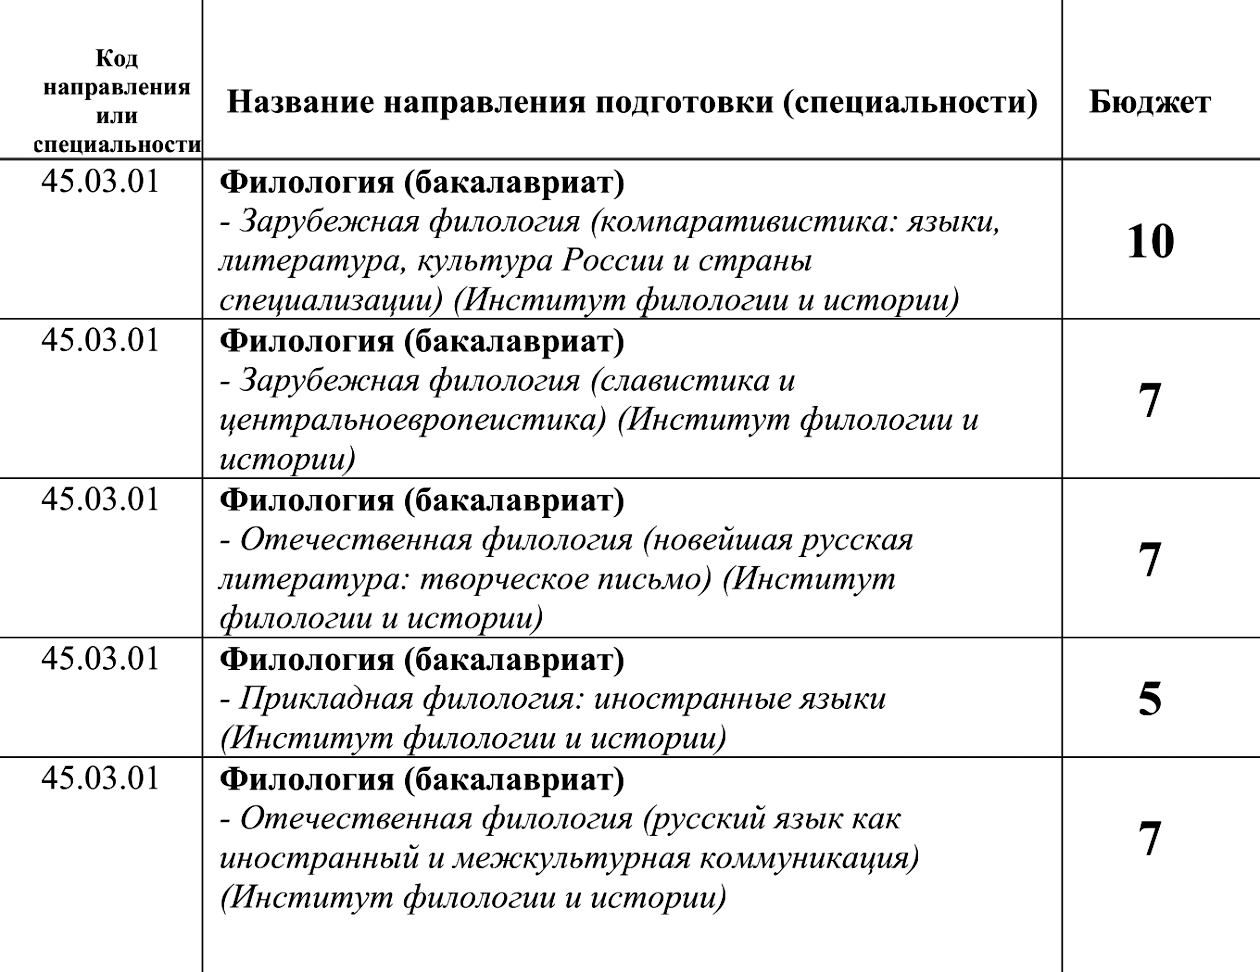 Даже выбрав все пять программ, абитуриент потратит всего одну попытку, потому что у них один код. Источник: rsuh.ru